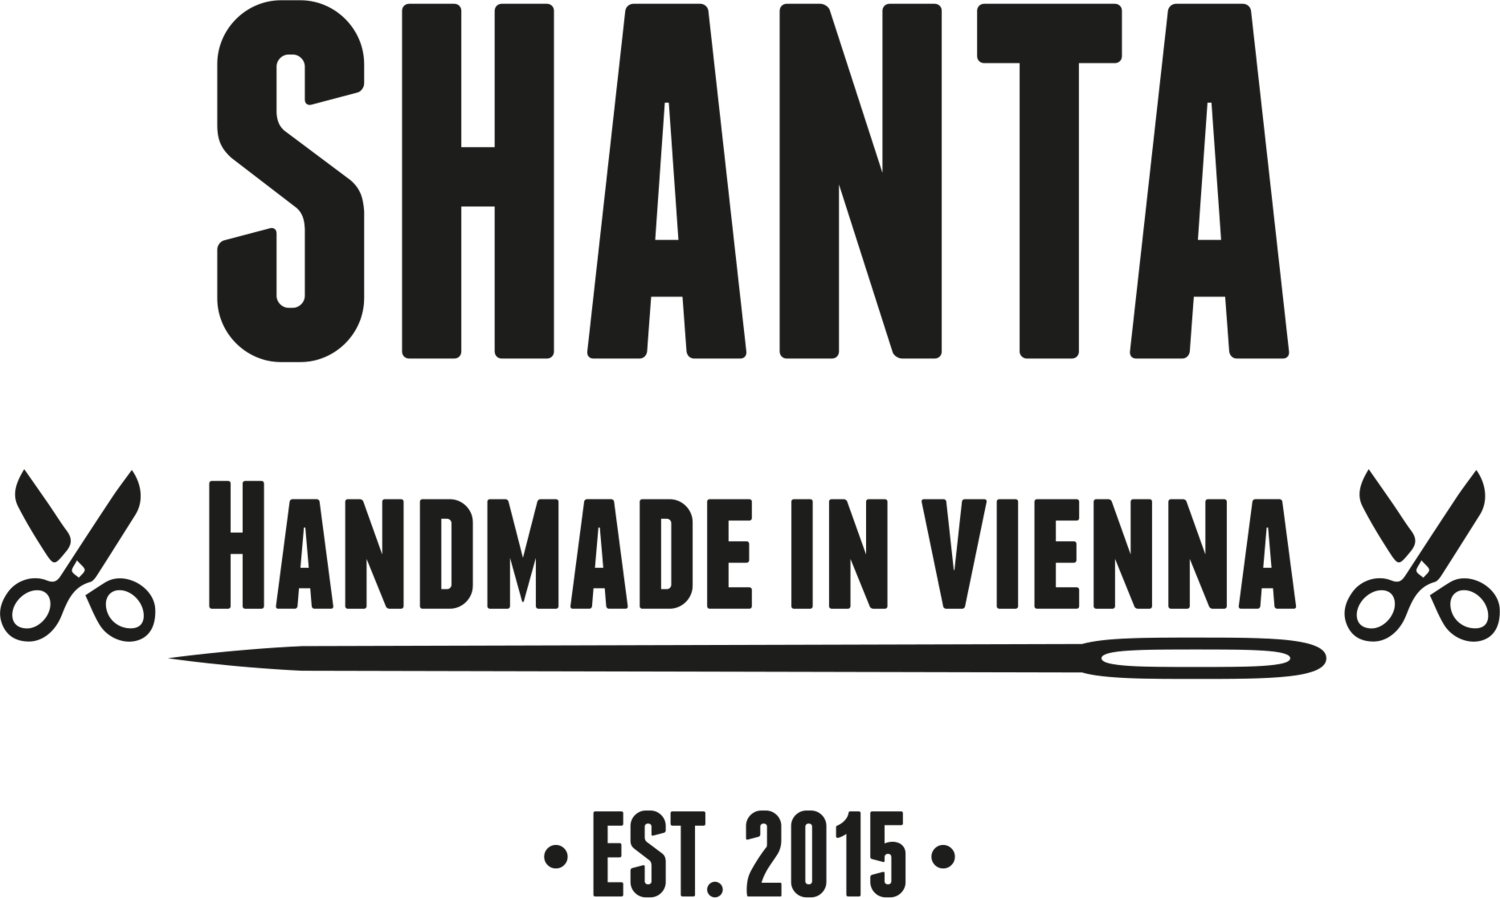 Shanta Vienna | Handmade in Vienna